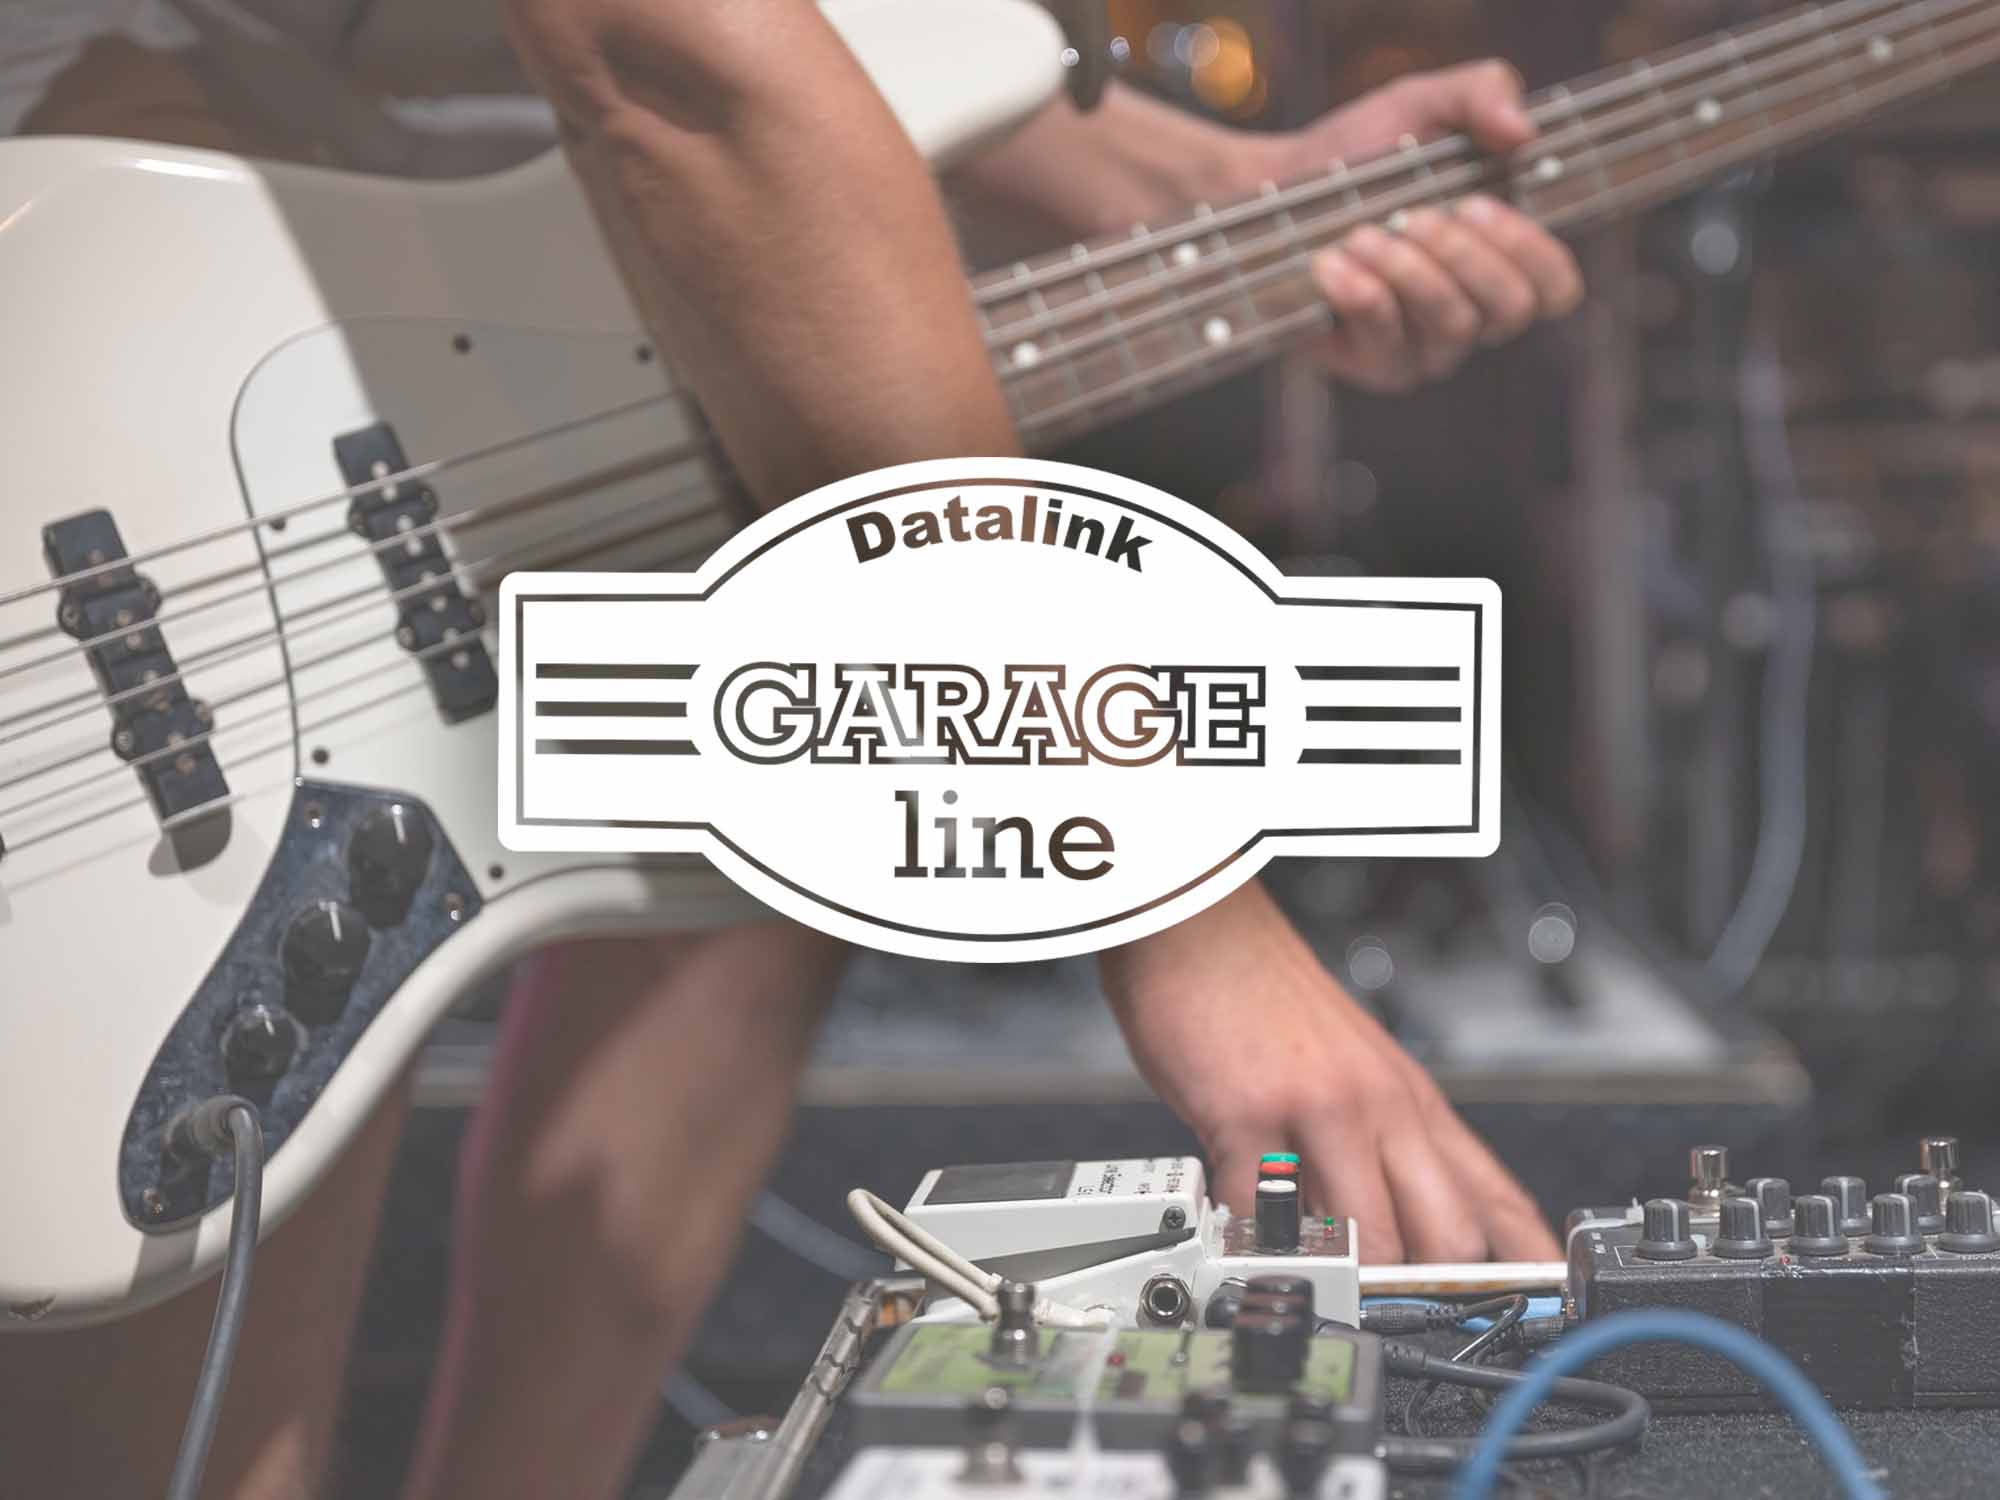 Os cabos para guitarra da Datalink, são compostos por três linhas: Linha POP, Linha Garage e Linha Revolution, pensadas para atender as necessidades do cliente.